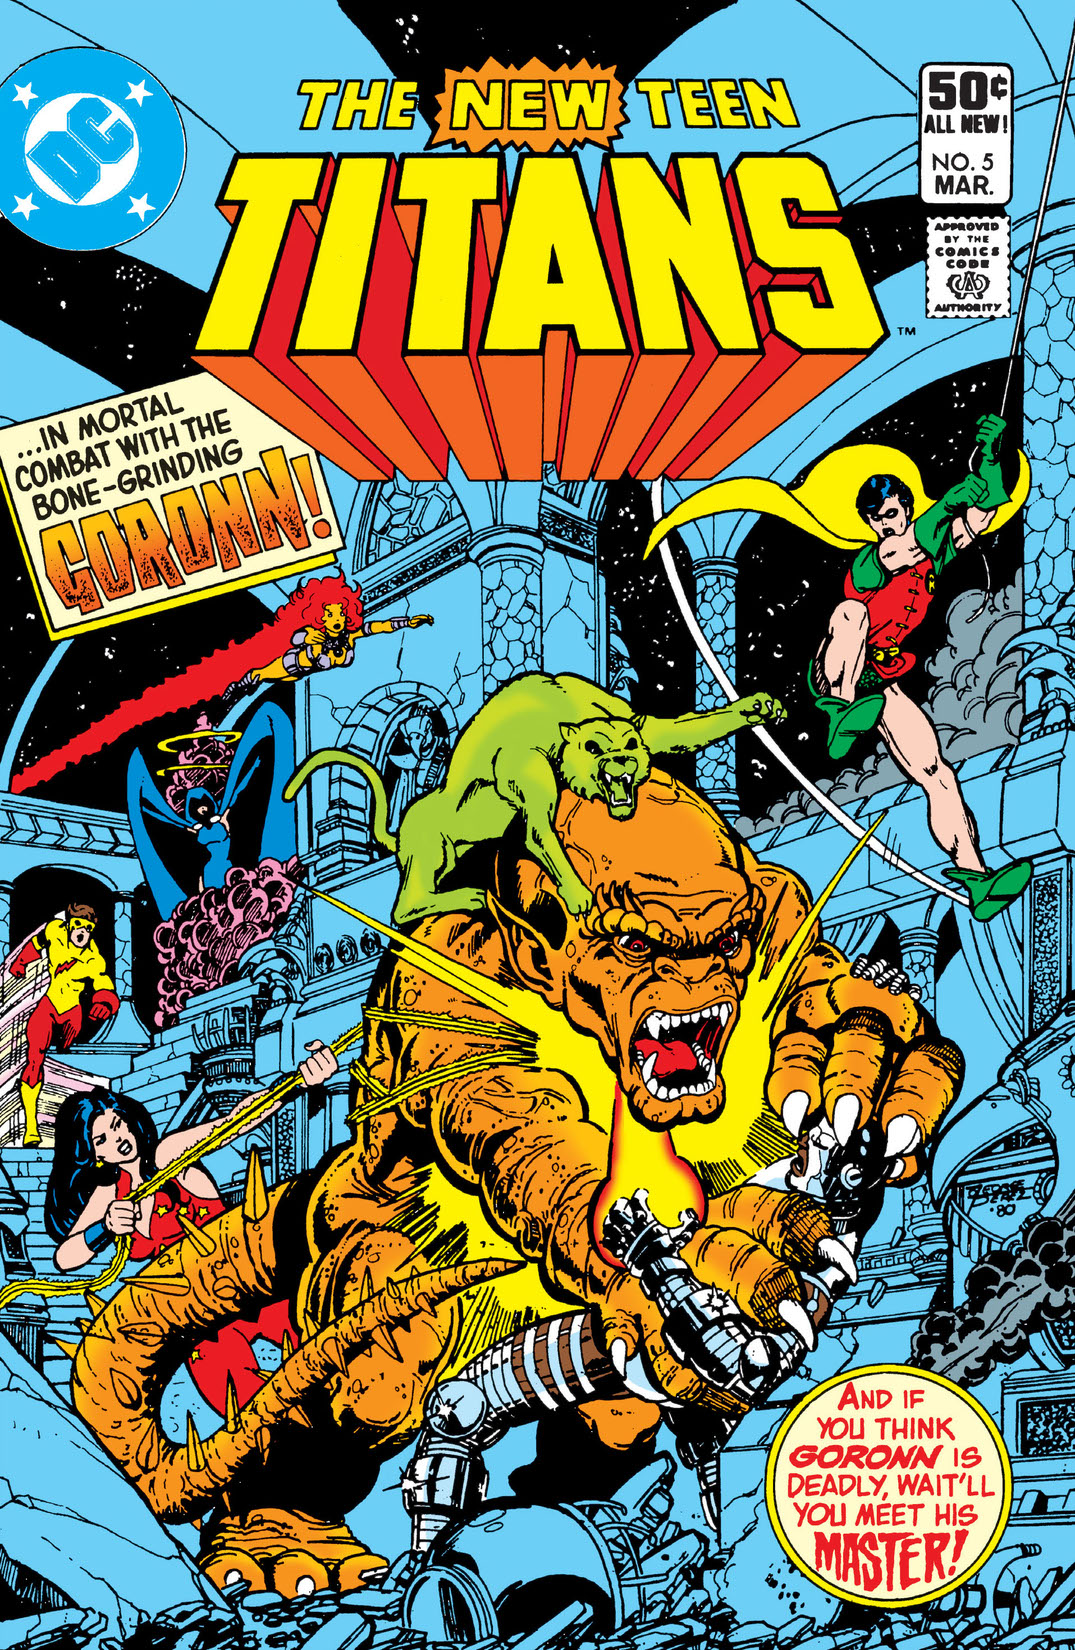 ザ・ニュー・ティーン・タイタンズ/The New Teen Titans No.28  DCコミックス/アメコミ/リーフ/漫画/マンガ/ペーパーバック/洋書/B3228119 - 漫画、コミック